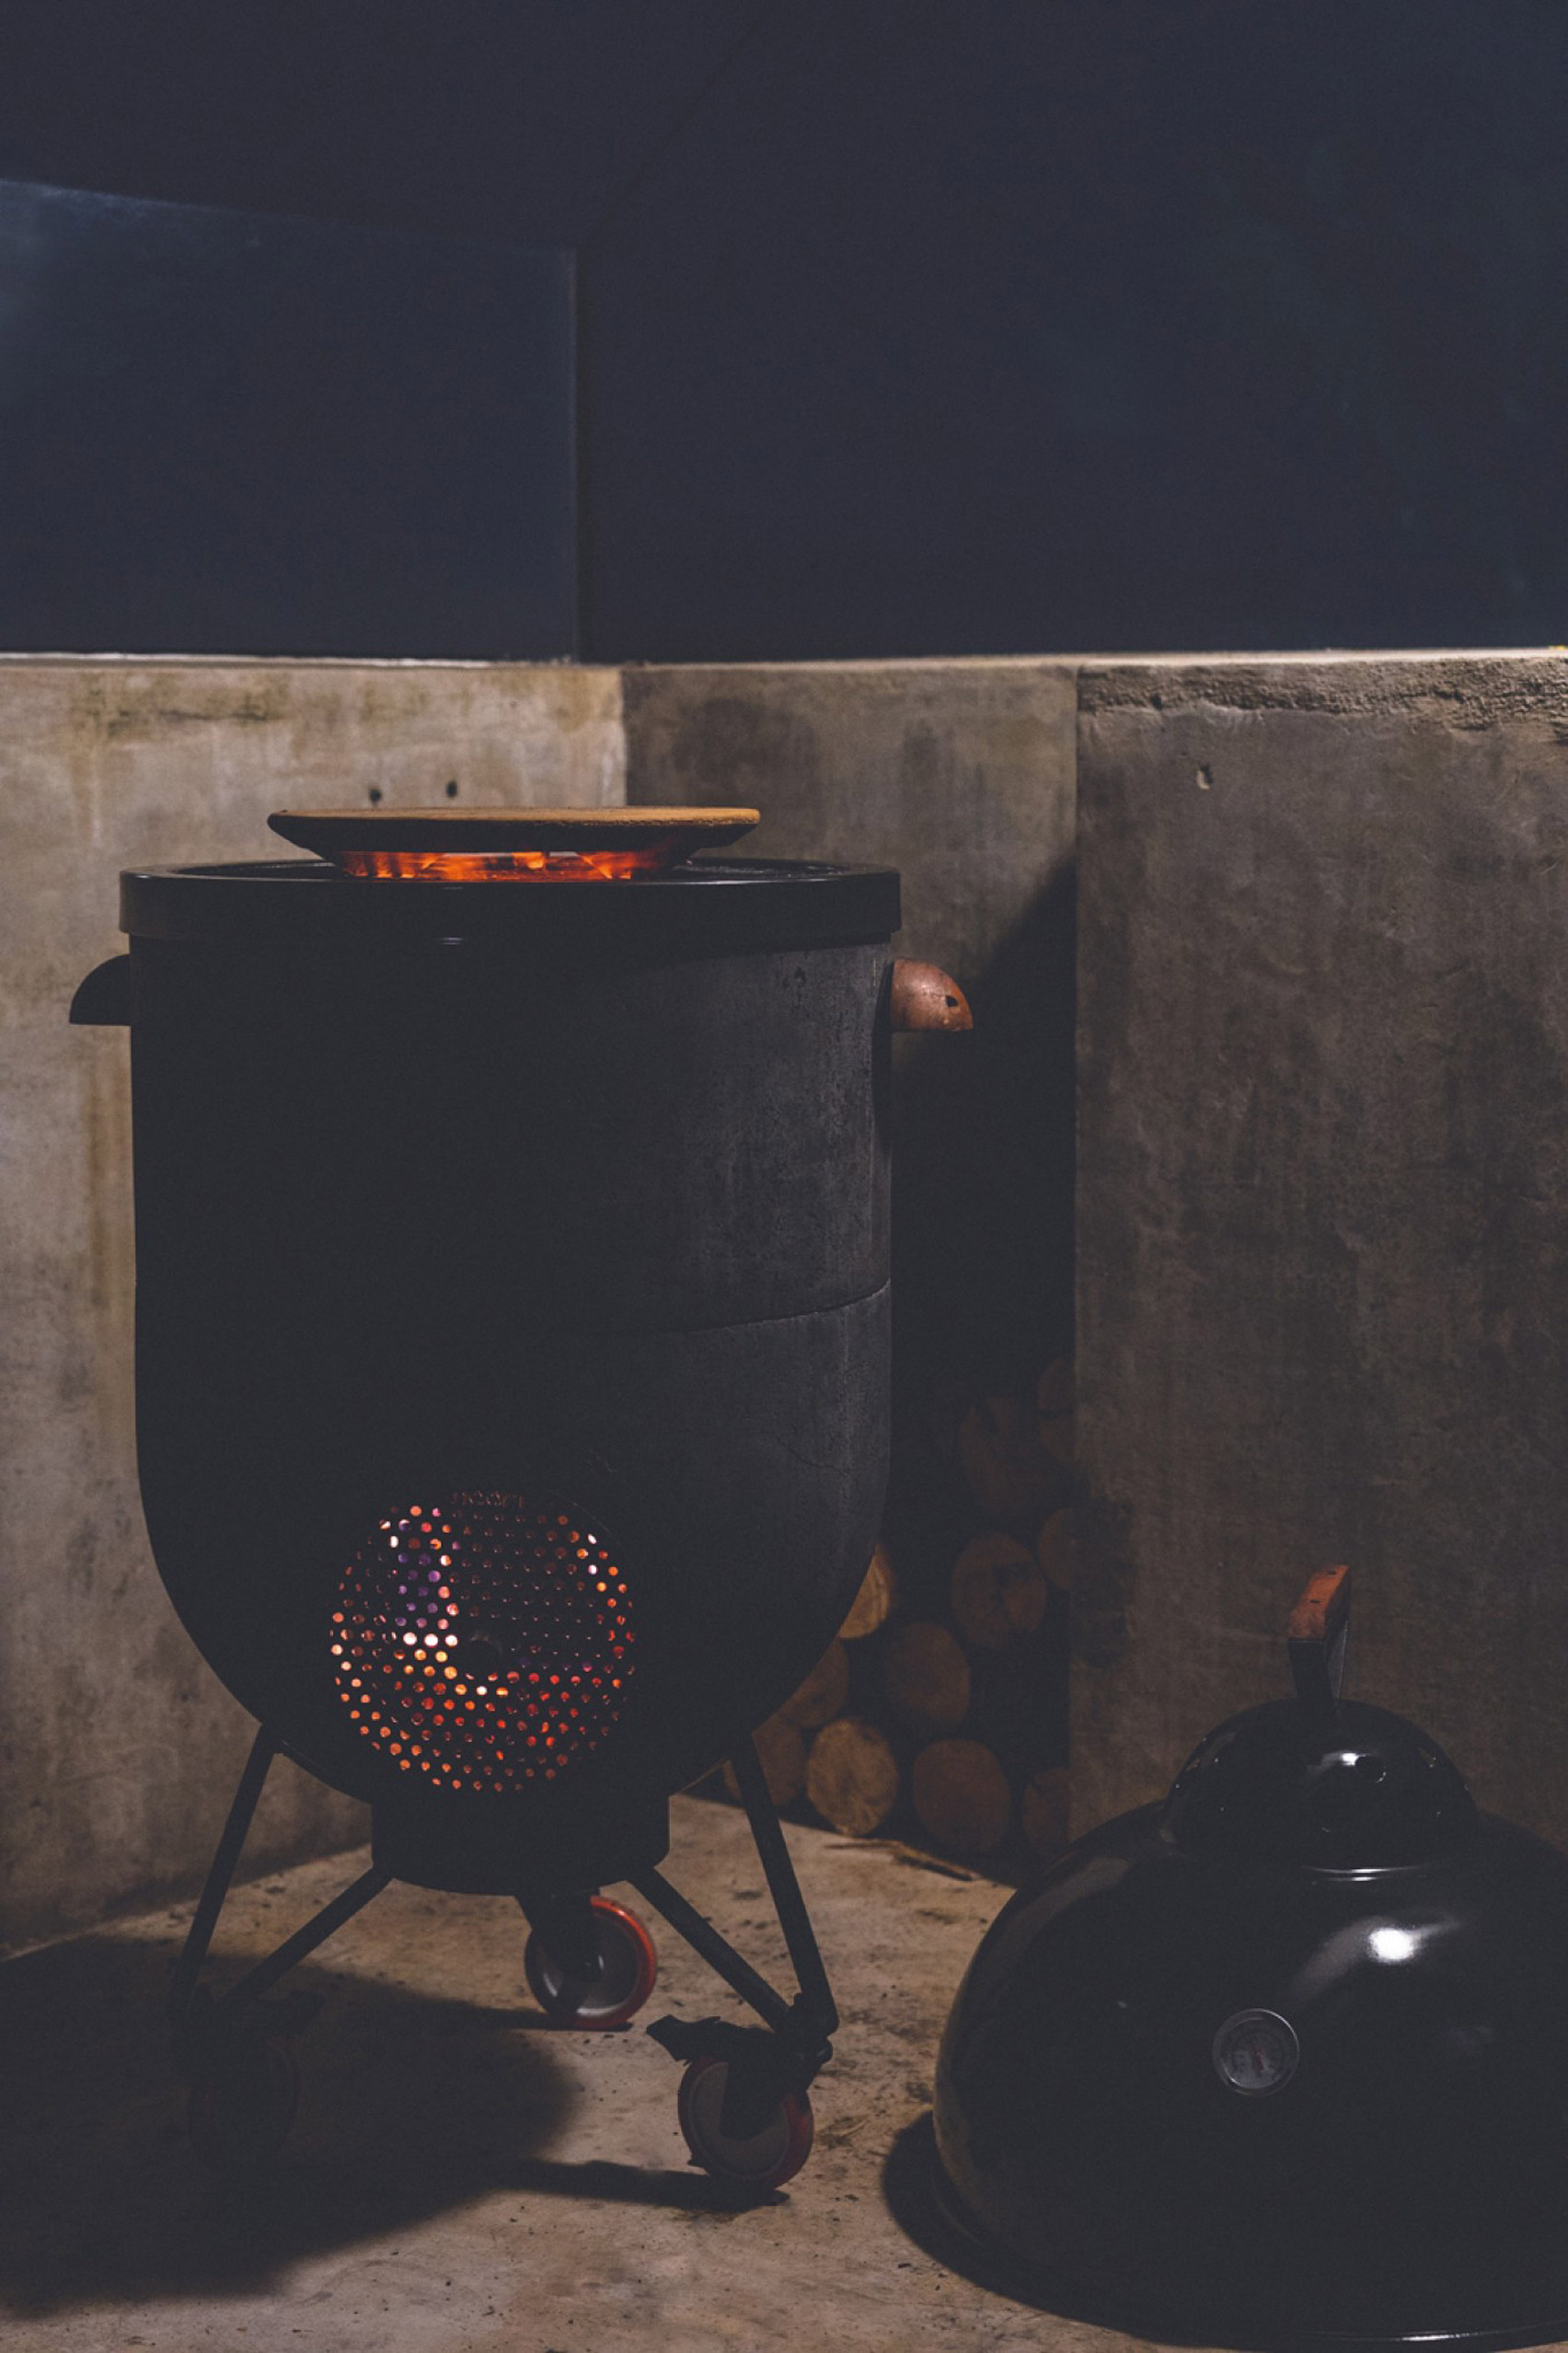 Noori stove: Multipurpose barbecue grill fire by Noori